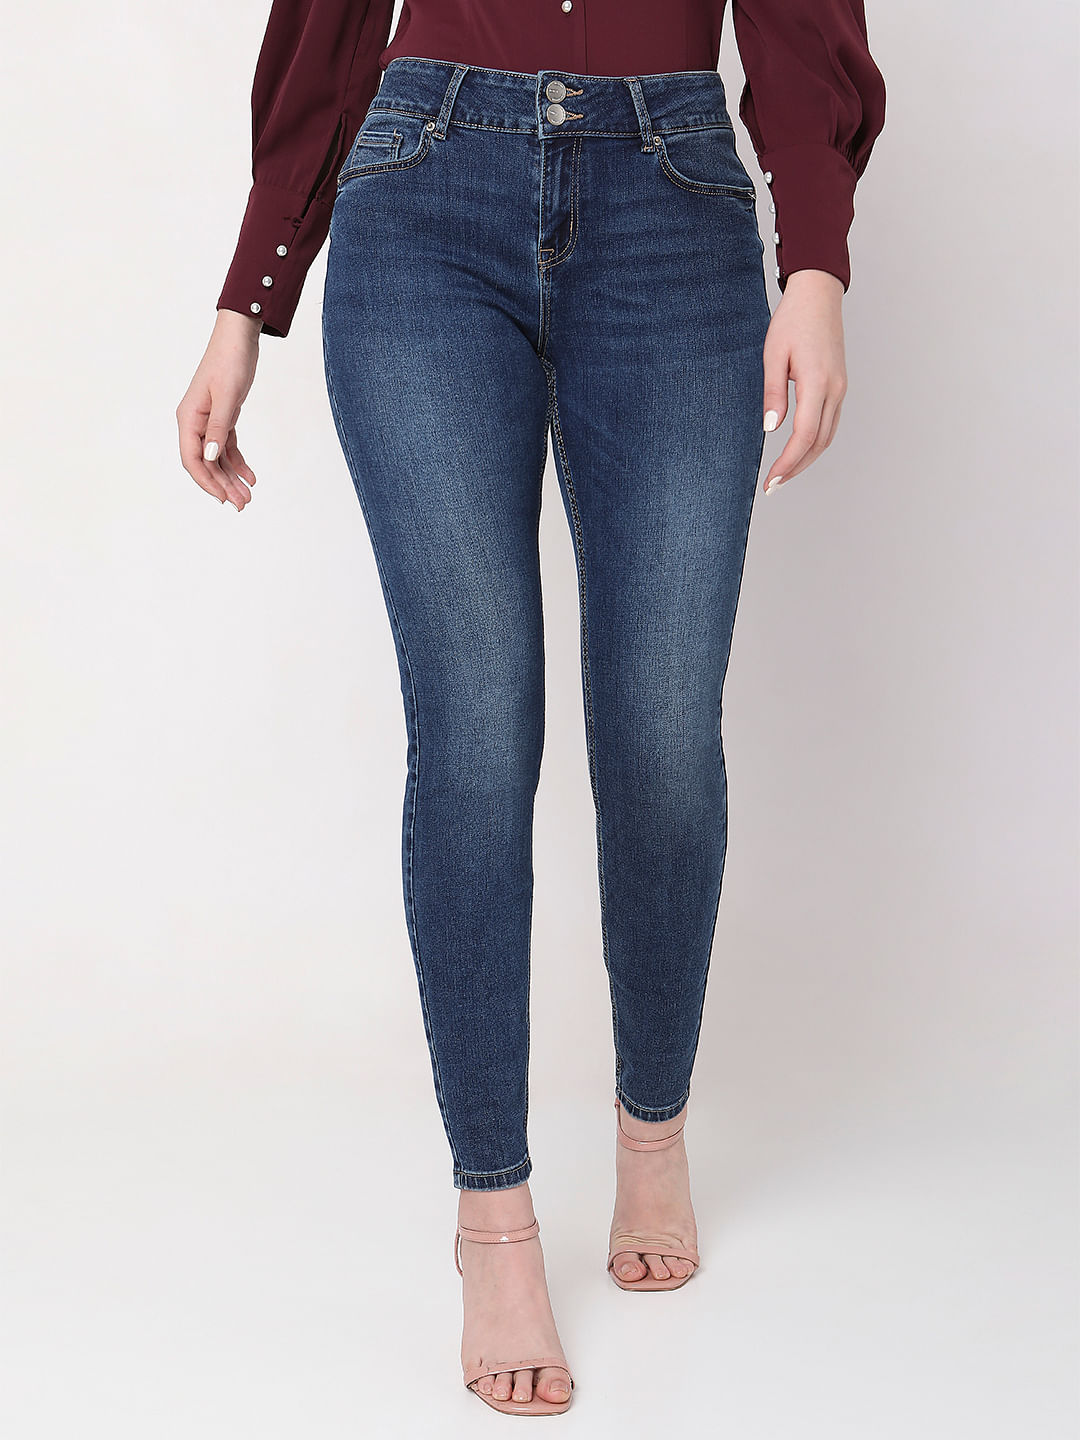 Jeans & Pants | mens sky blue color ankle length denim jeans size- | Freeup